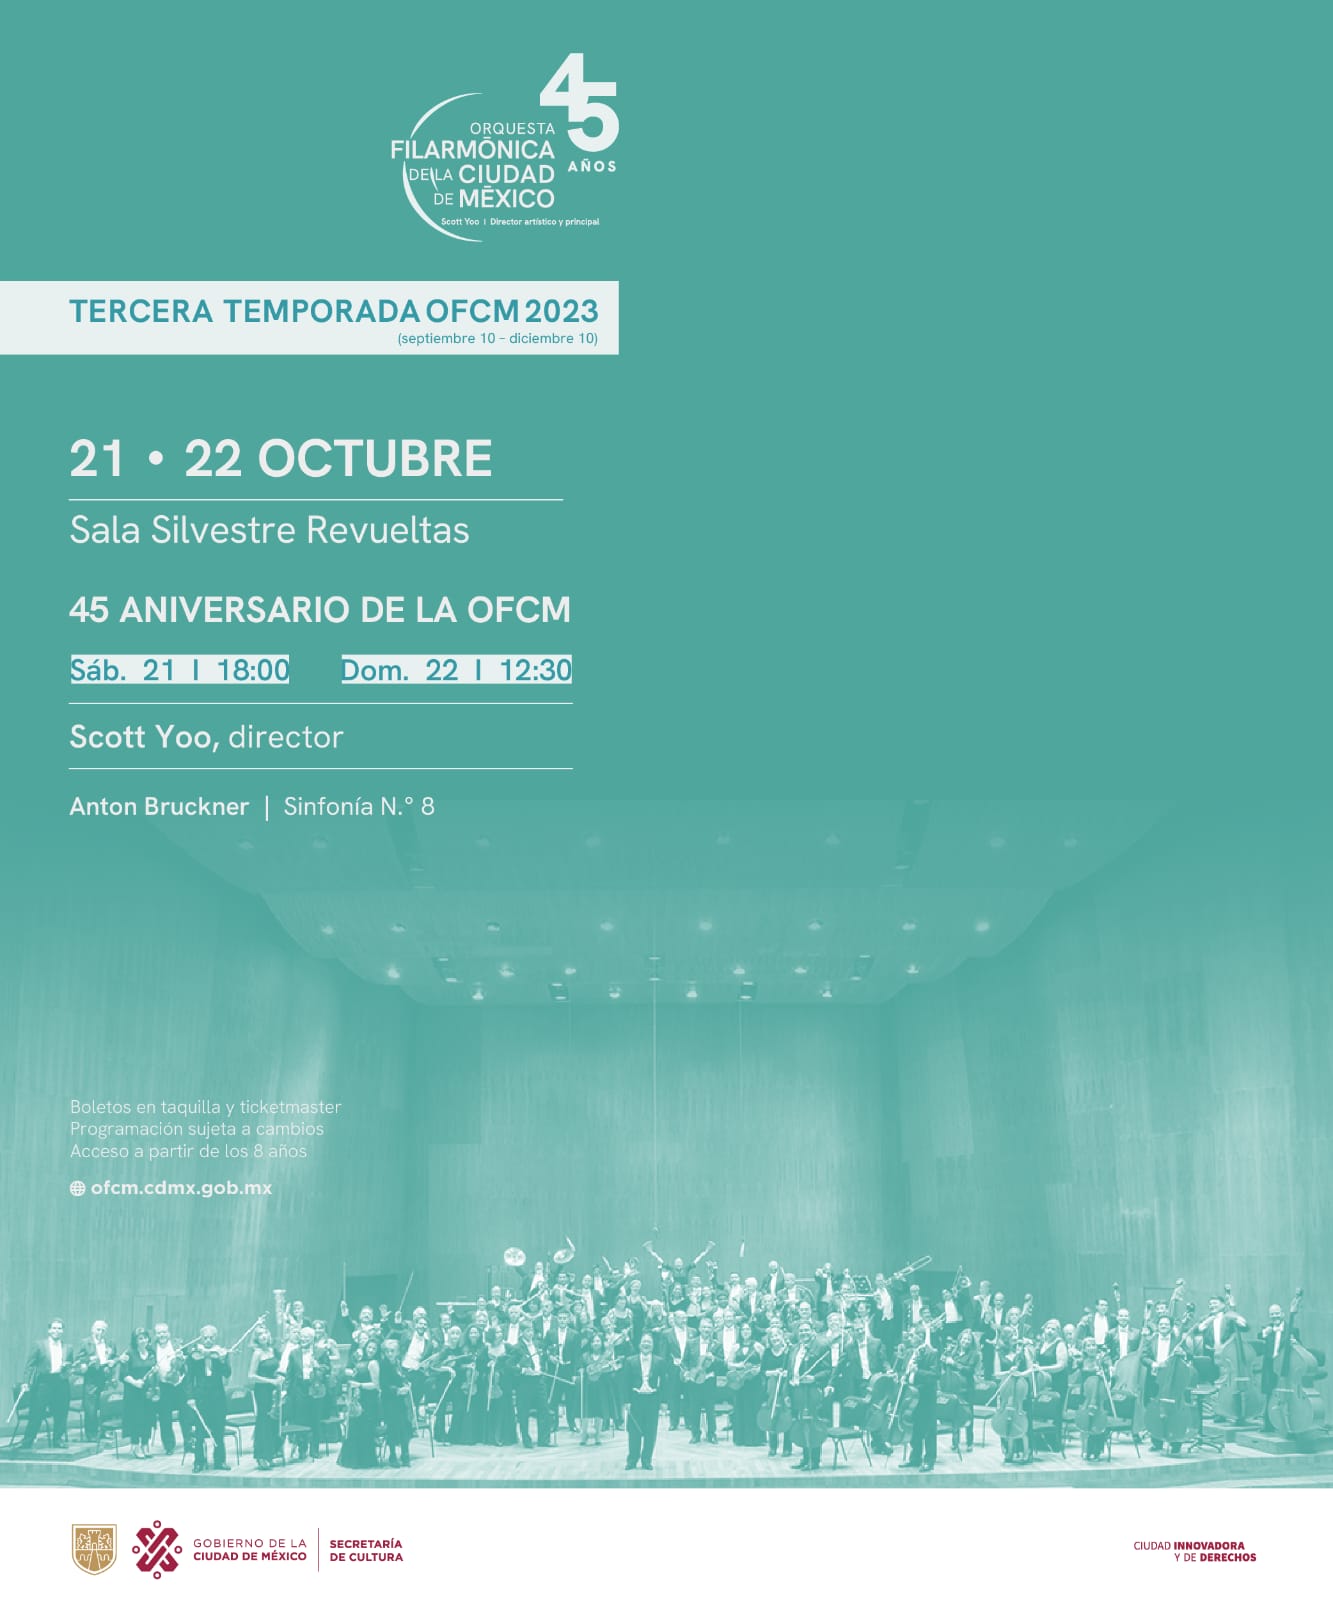 La orquesta filarmónica de la Ciudad de México celebra 45 aniversario con la octava sinfonía de Antón Bruckner 